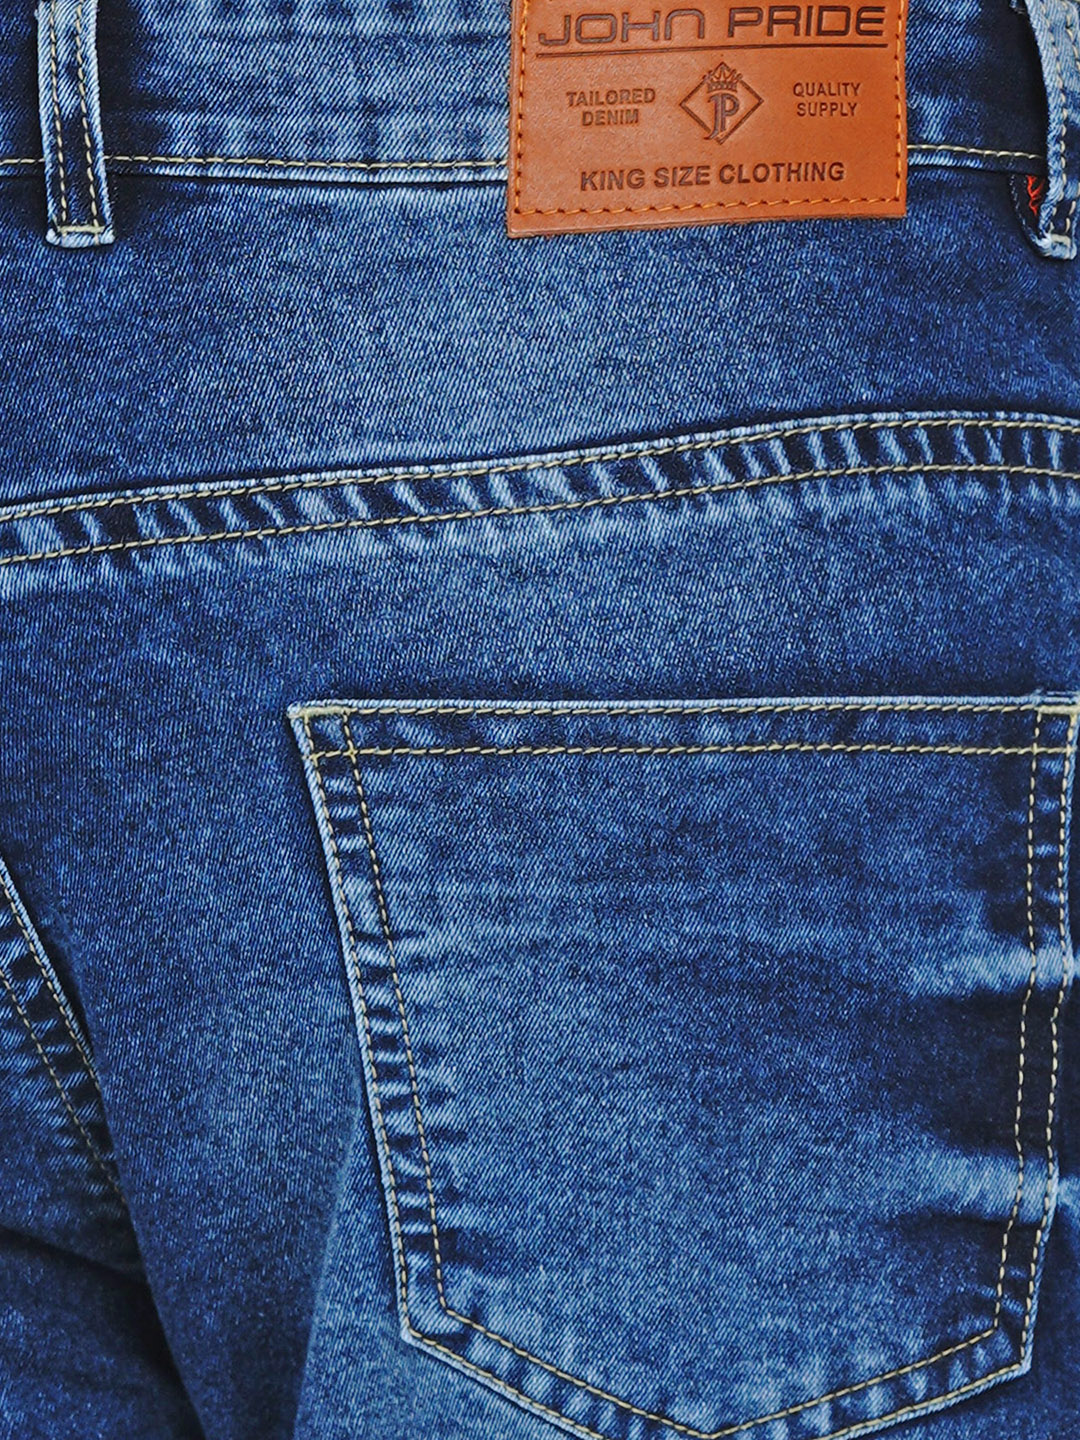 affordables/jeans/JPJ2013/jpj2013-2.jpg